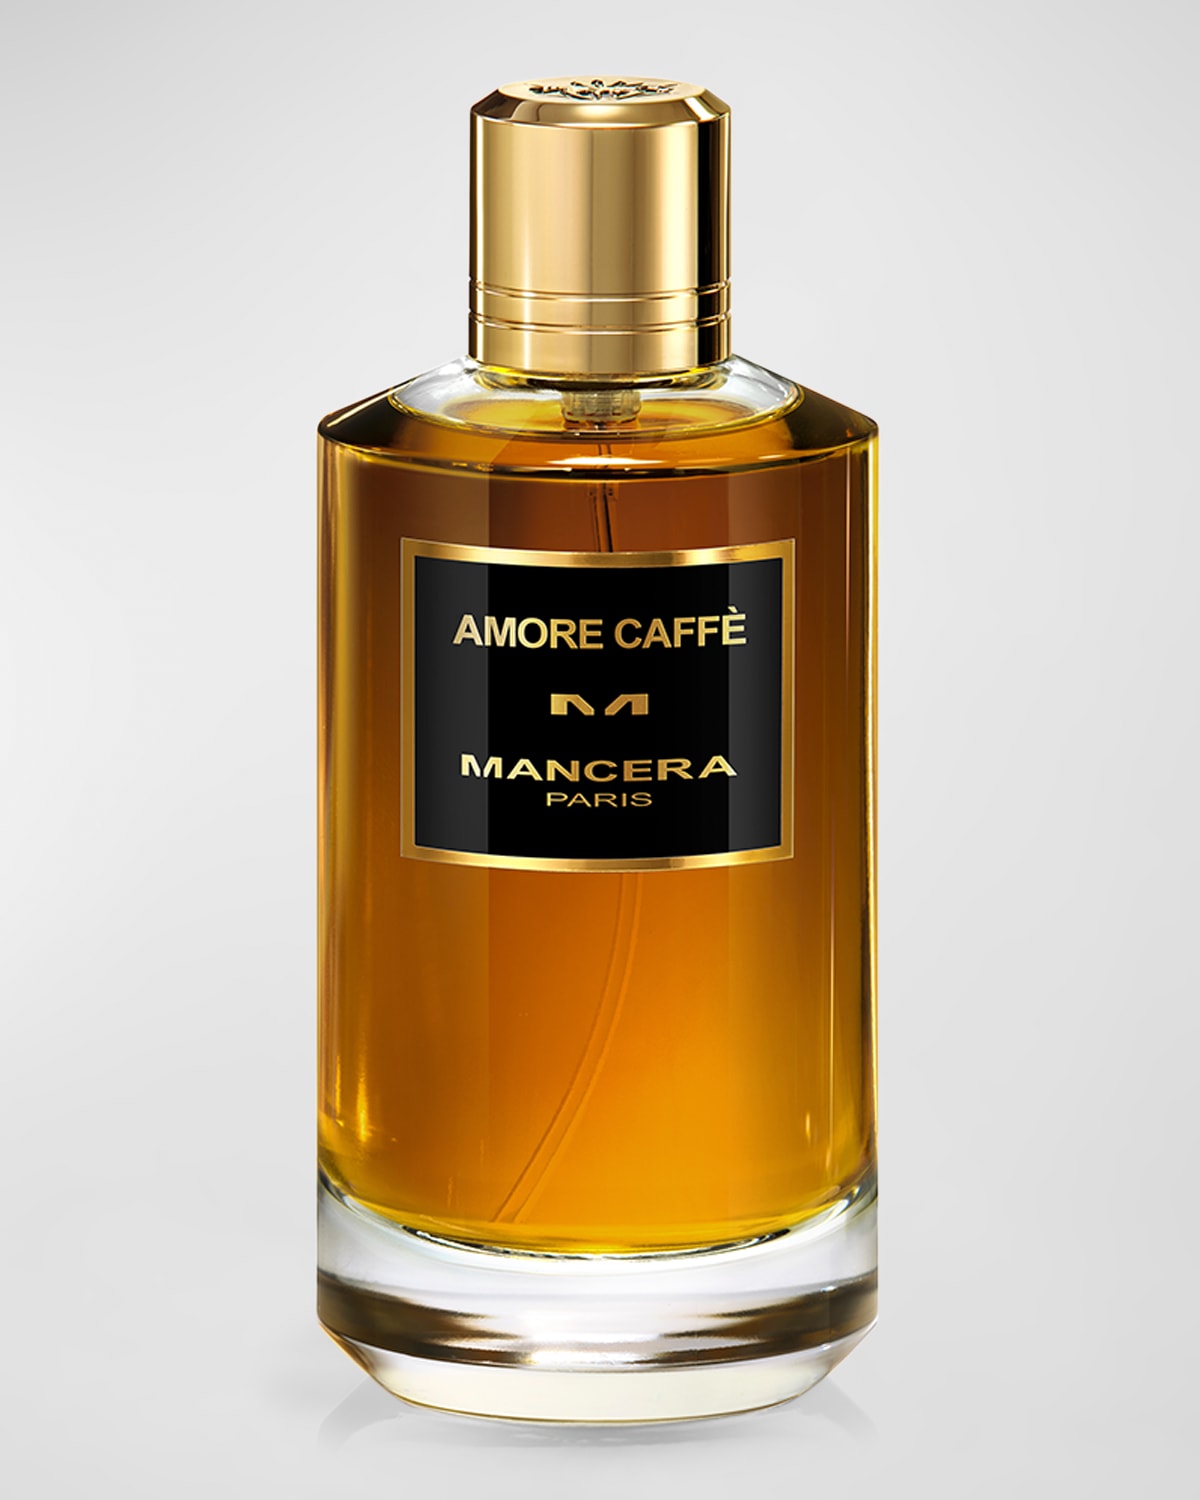 Mancera Amore Caffe Eau De Parfum, 4 Oz.